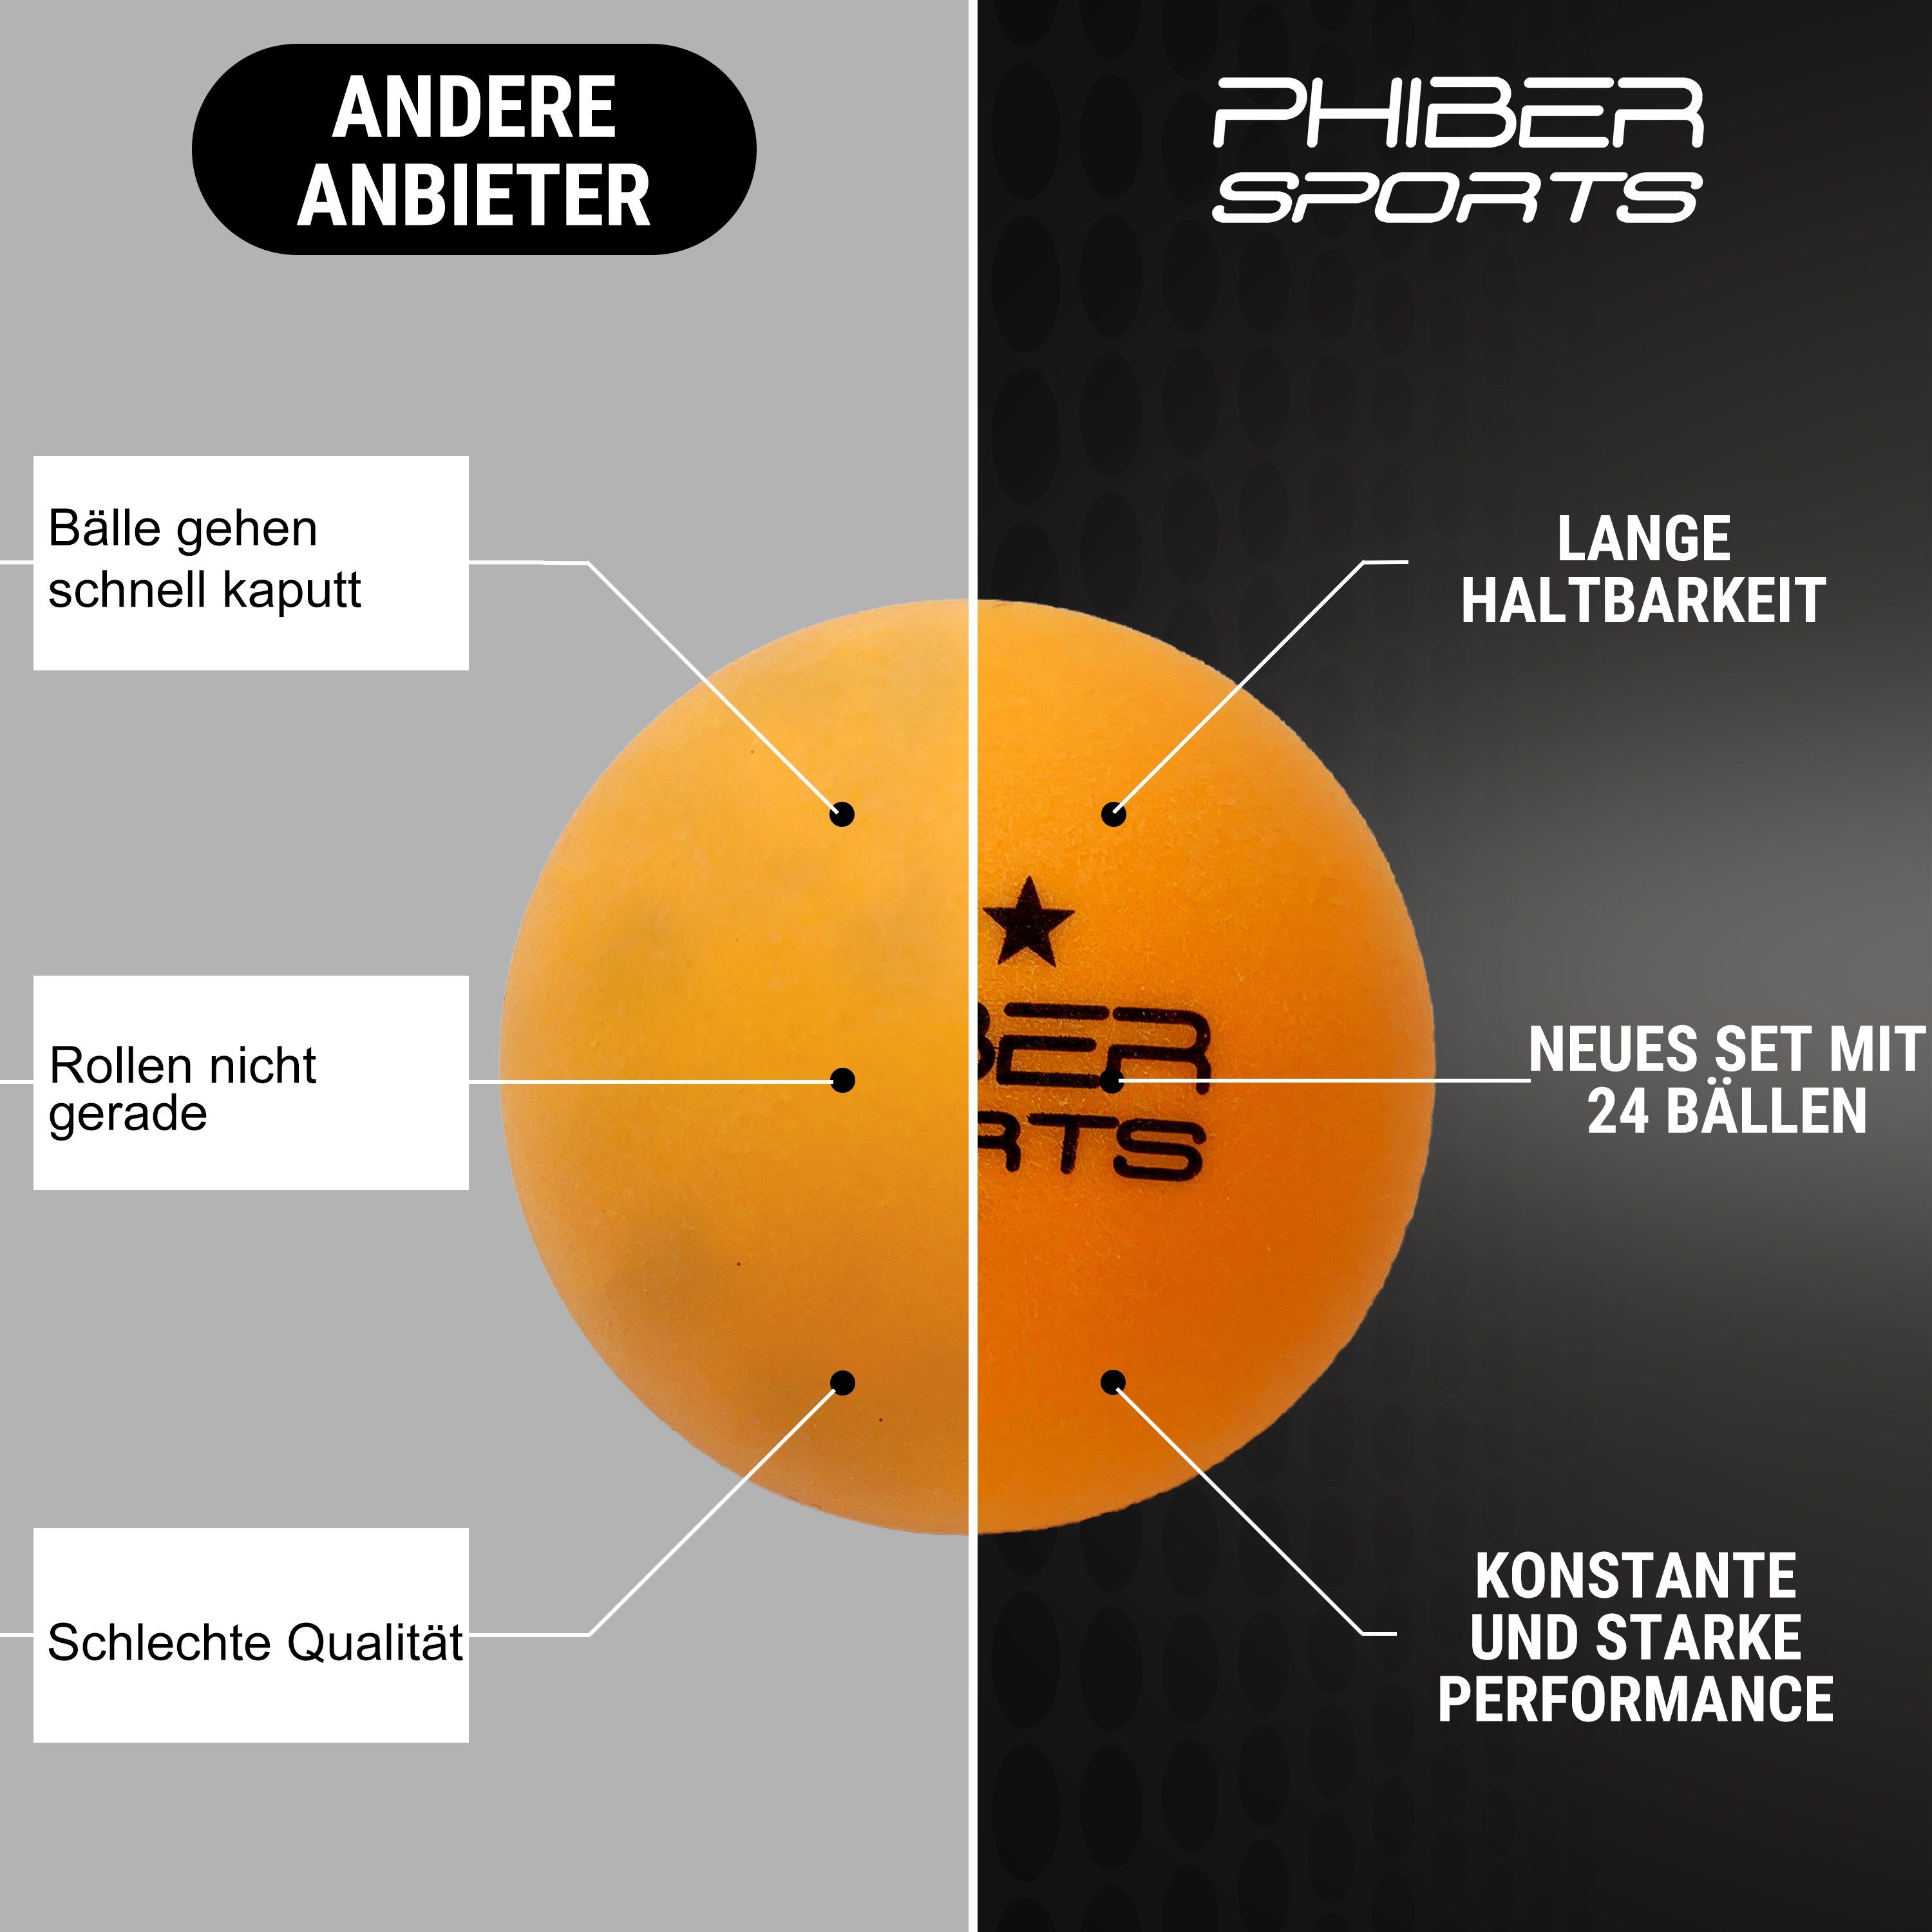 Tischtennisball für Ideal und Nach Stück] 3 produziert - PHIBER-SPORTS Wettbewerbsrichtlinien Tischtennisbälle), Stern 3-Stern Familien [24 Profis (Set, 24 Orange Anfänger, orange